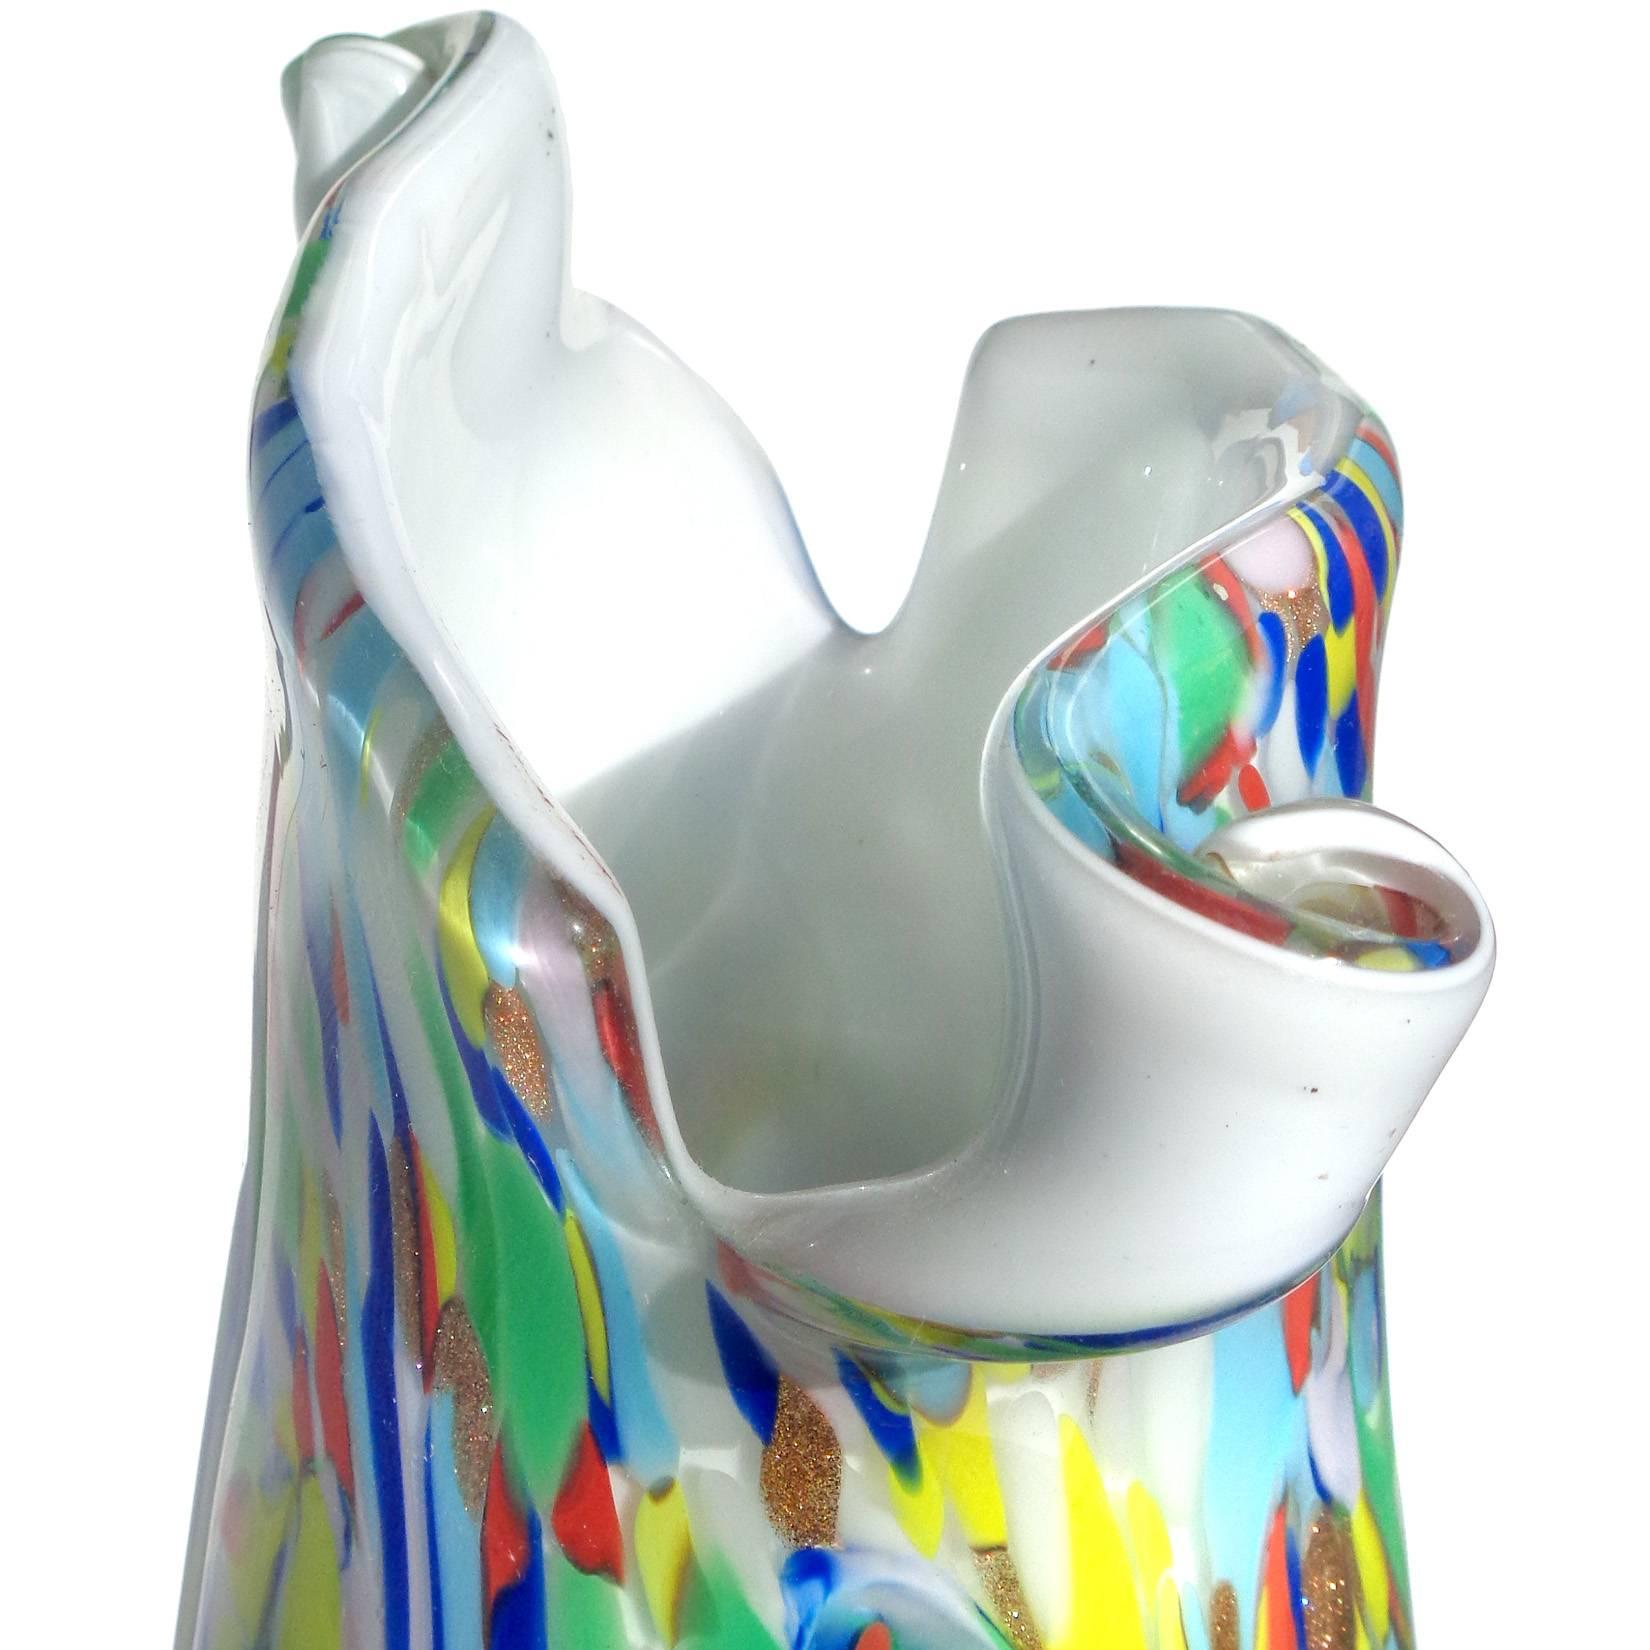 Magnifique grand vase en verre d'art italien soufflé à la main de Murano, aux couleurs de l'arc-en-ciel et aux tourbillons blancs, avec bord coupé en ciseaux. Documenté à la société Fratelli Toso, dans le design 